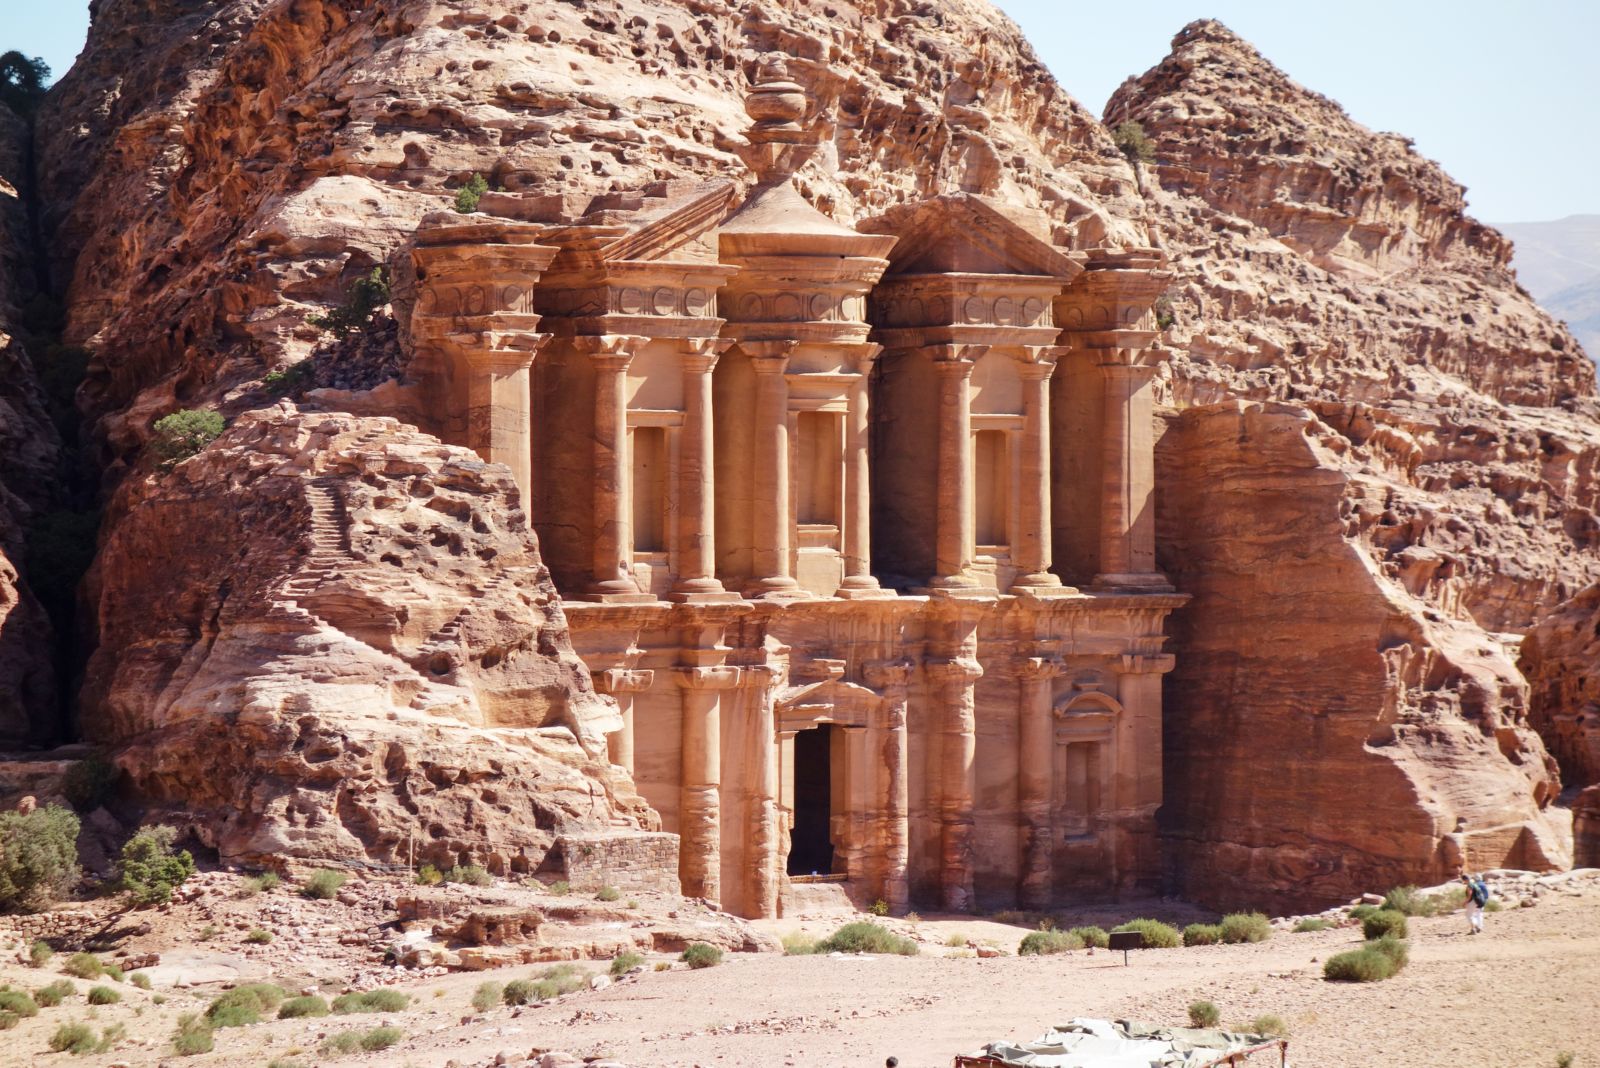 Petra, Wadi Rum and Jordan Highlights 3 Day Tour from Jerusalem